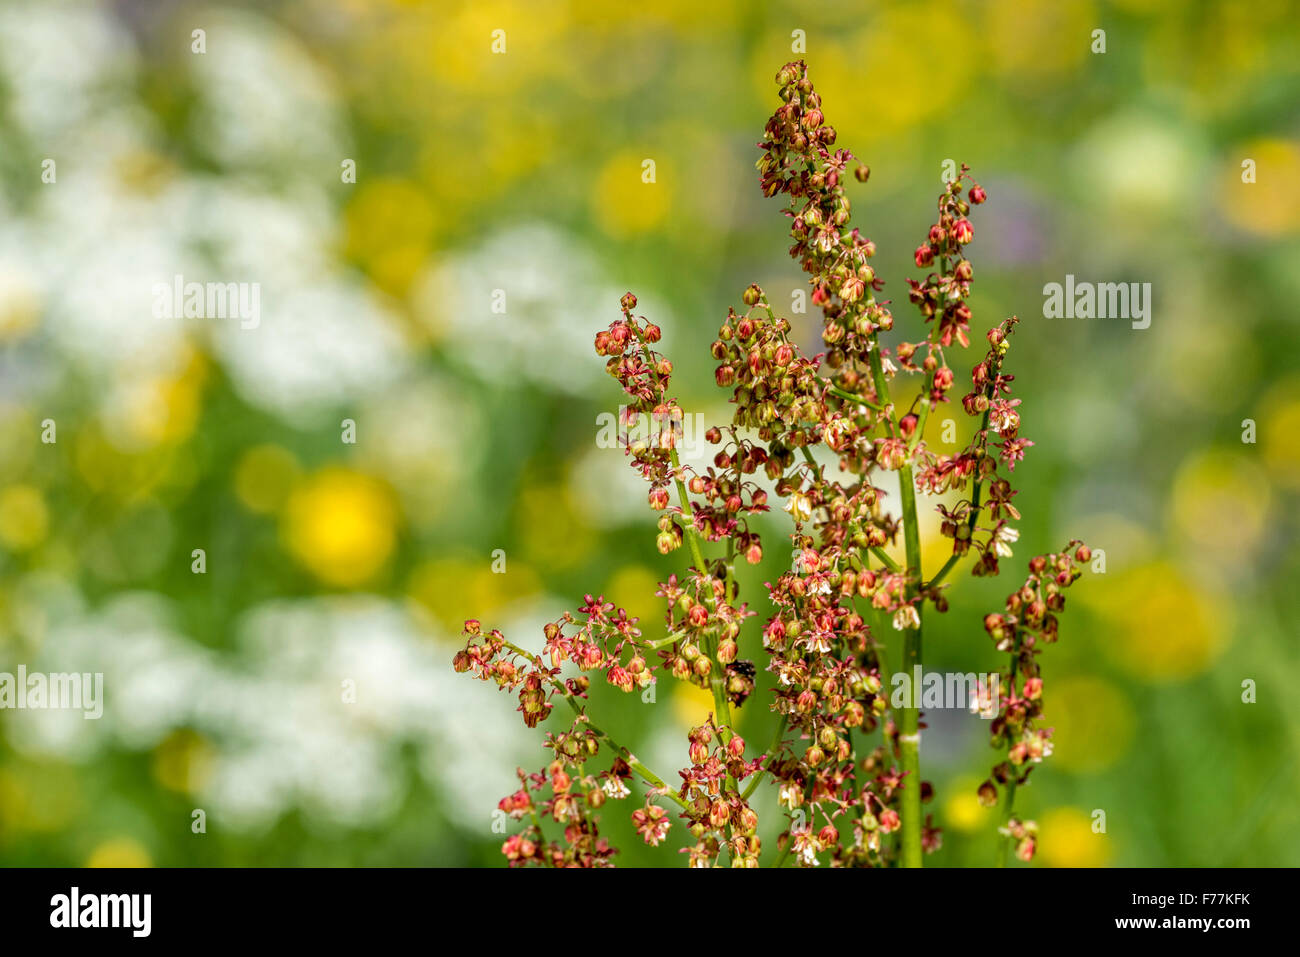 Common sorrel / garden sorrel (Rumex acetosa) in flower in meadow Stock Photo